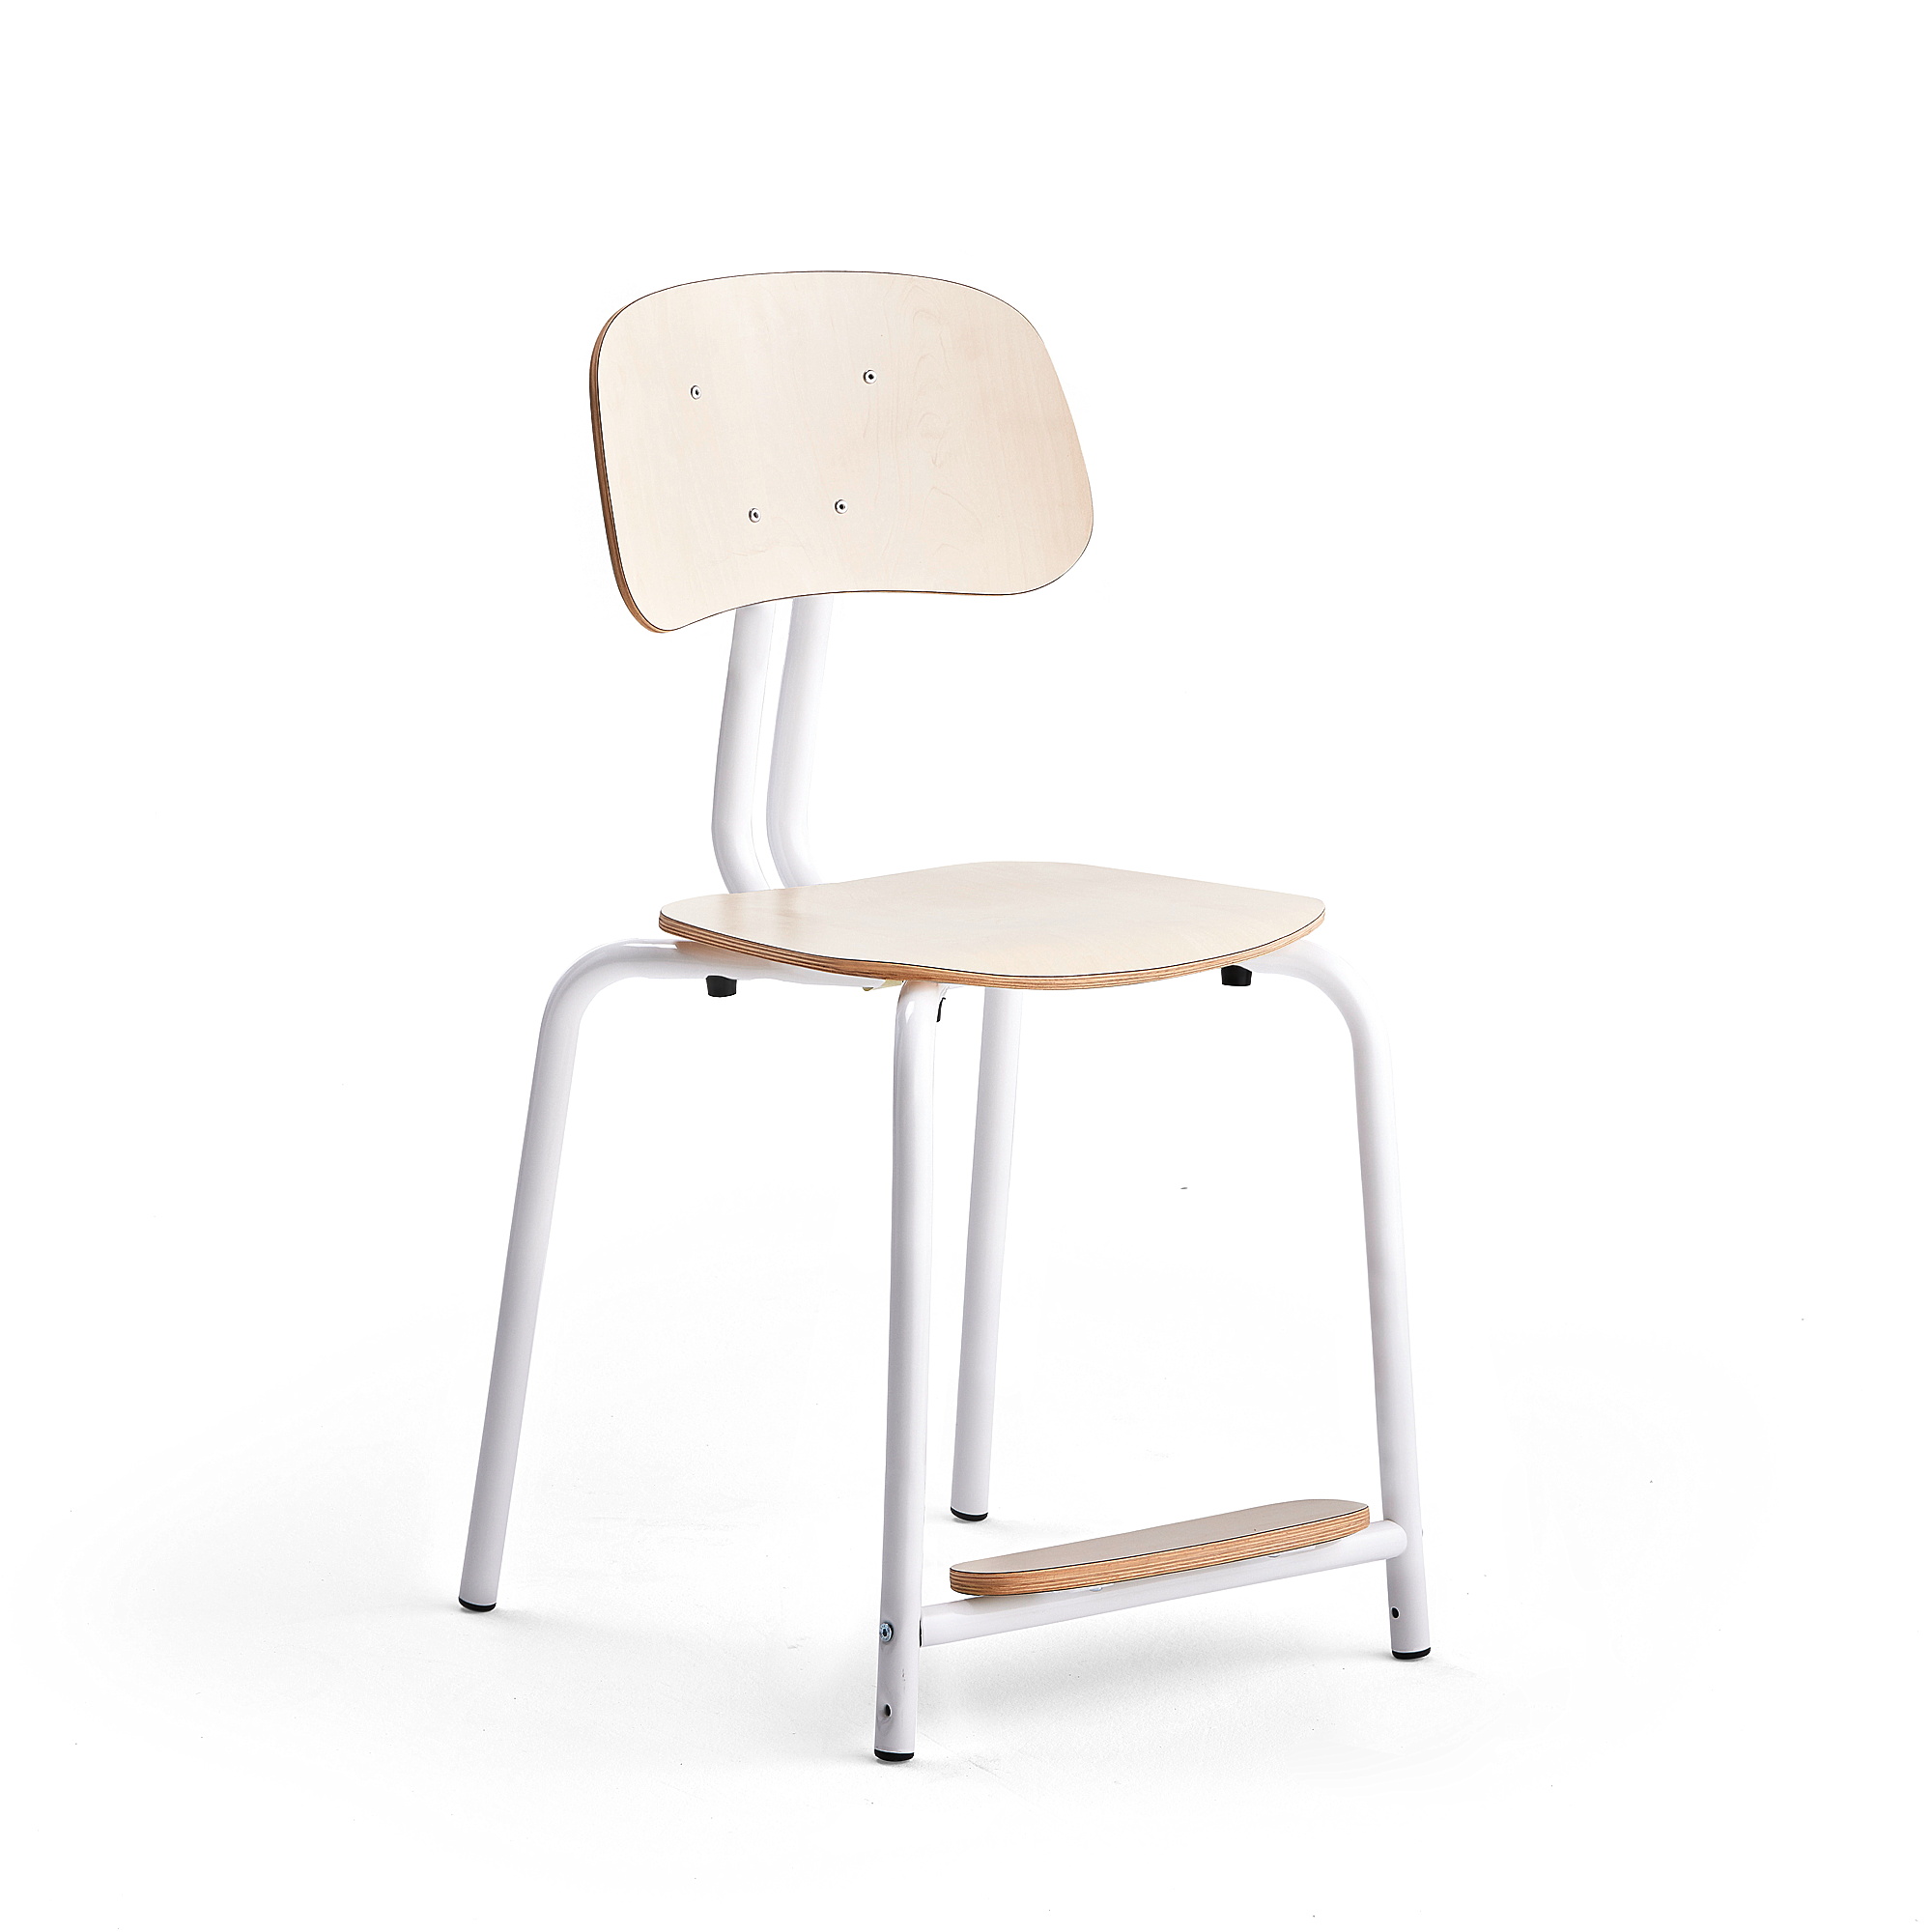 Školní židle YNGVE, 4 nohy, výška 500 mm, bílá/bříza